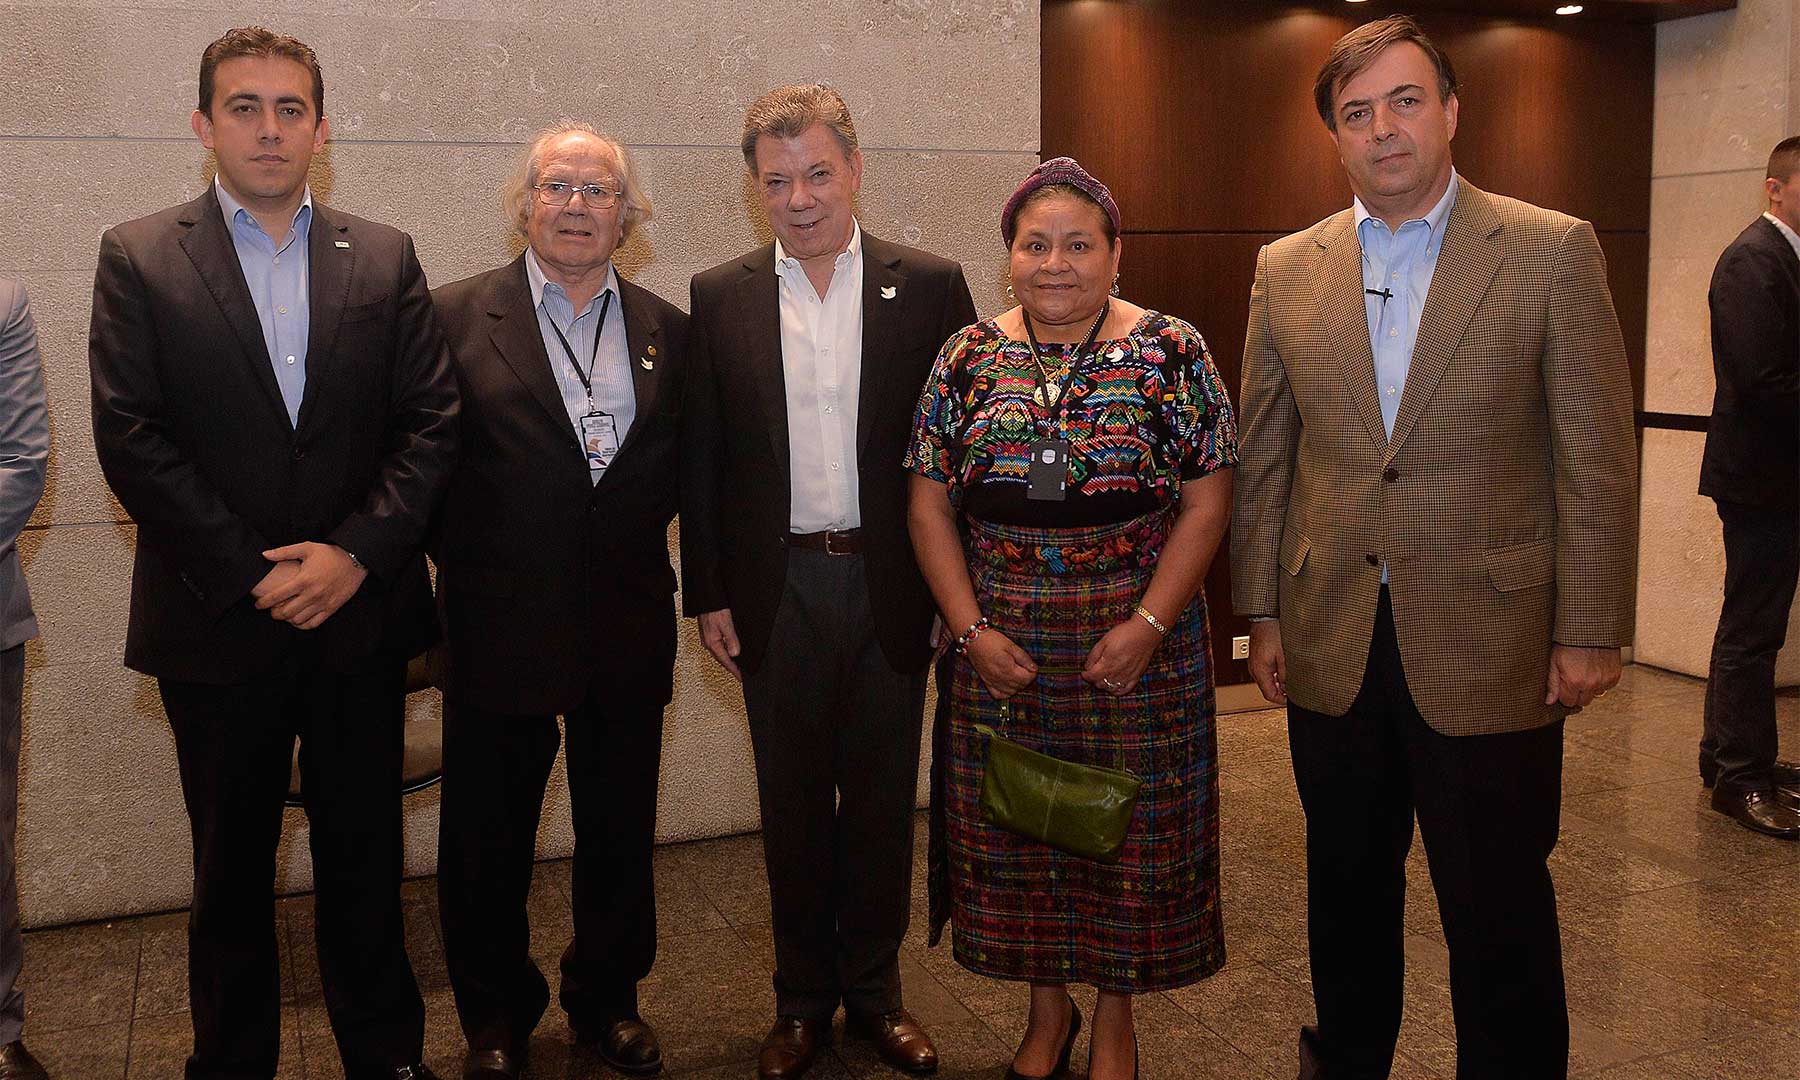 El Presidente Santos, el Registrador Nacional y el Presidente del Consejo Electoral con los Premios Nobel de Paz Rigoberta Menchú y Adolfo Pérez Esquivel, quienes hacen parte de la Misión de Observación Internacional del Plebiscito.